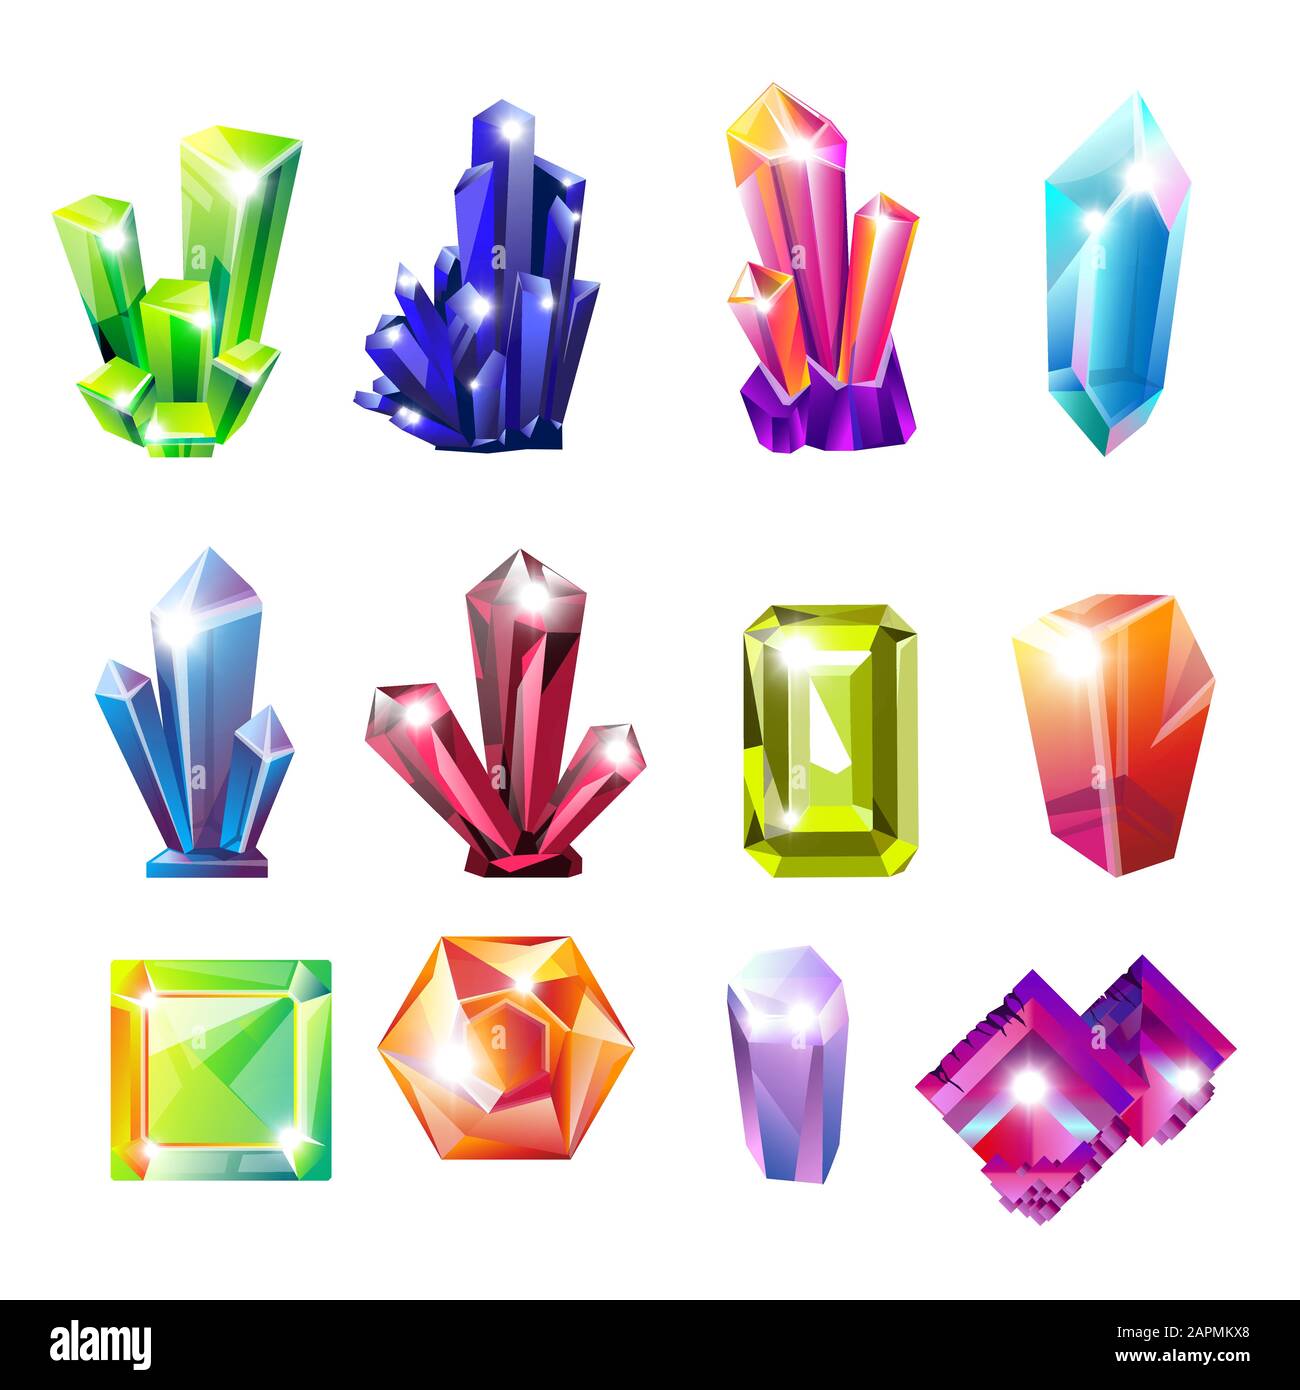 Kristalle isolierten Ikonen, ungeschnittene Edelsteine oder natürliche Ressourcen Stock Vektor